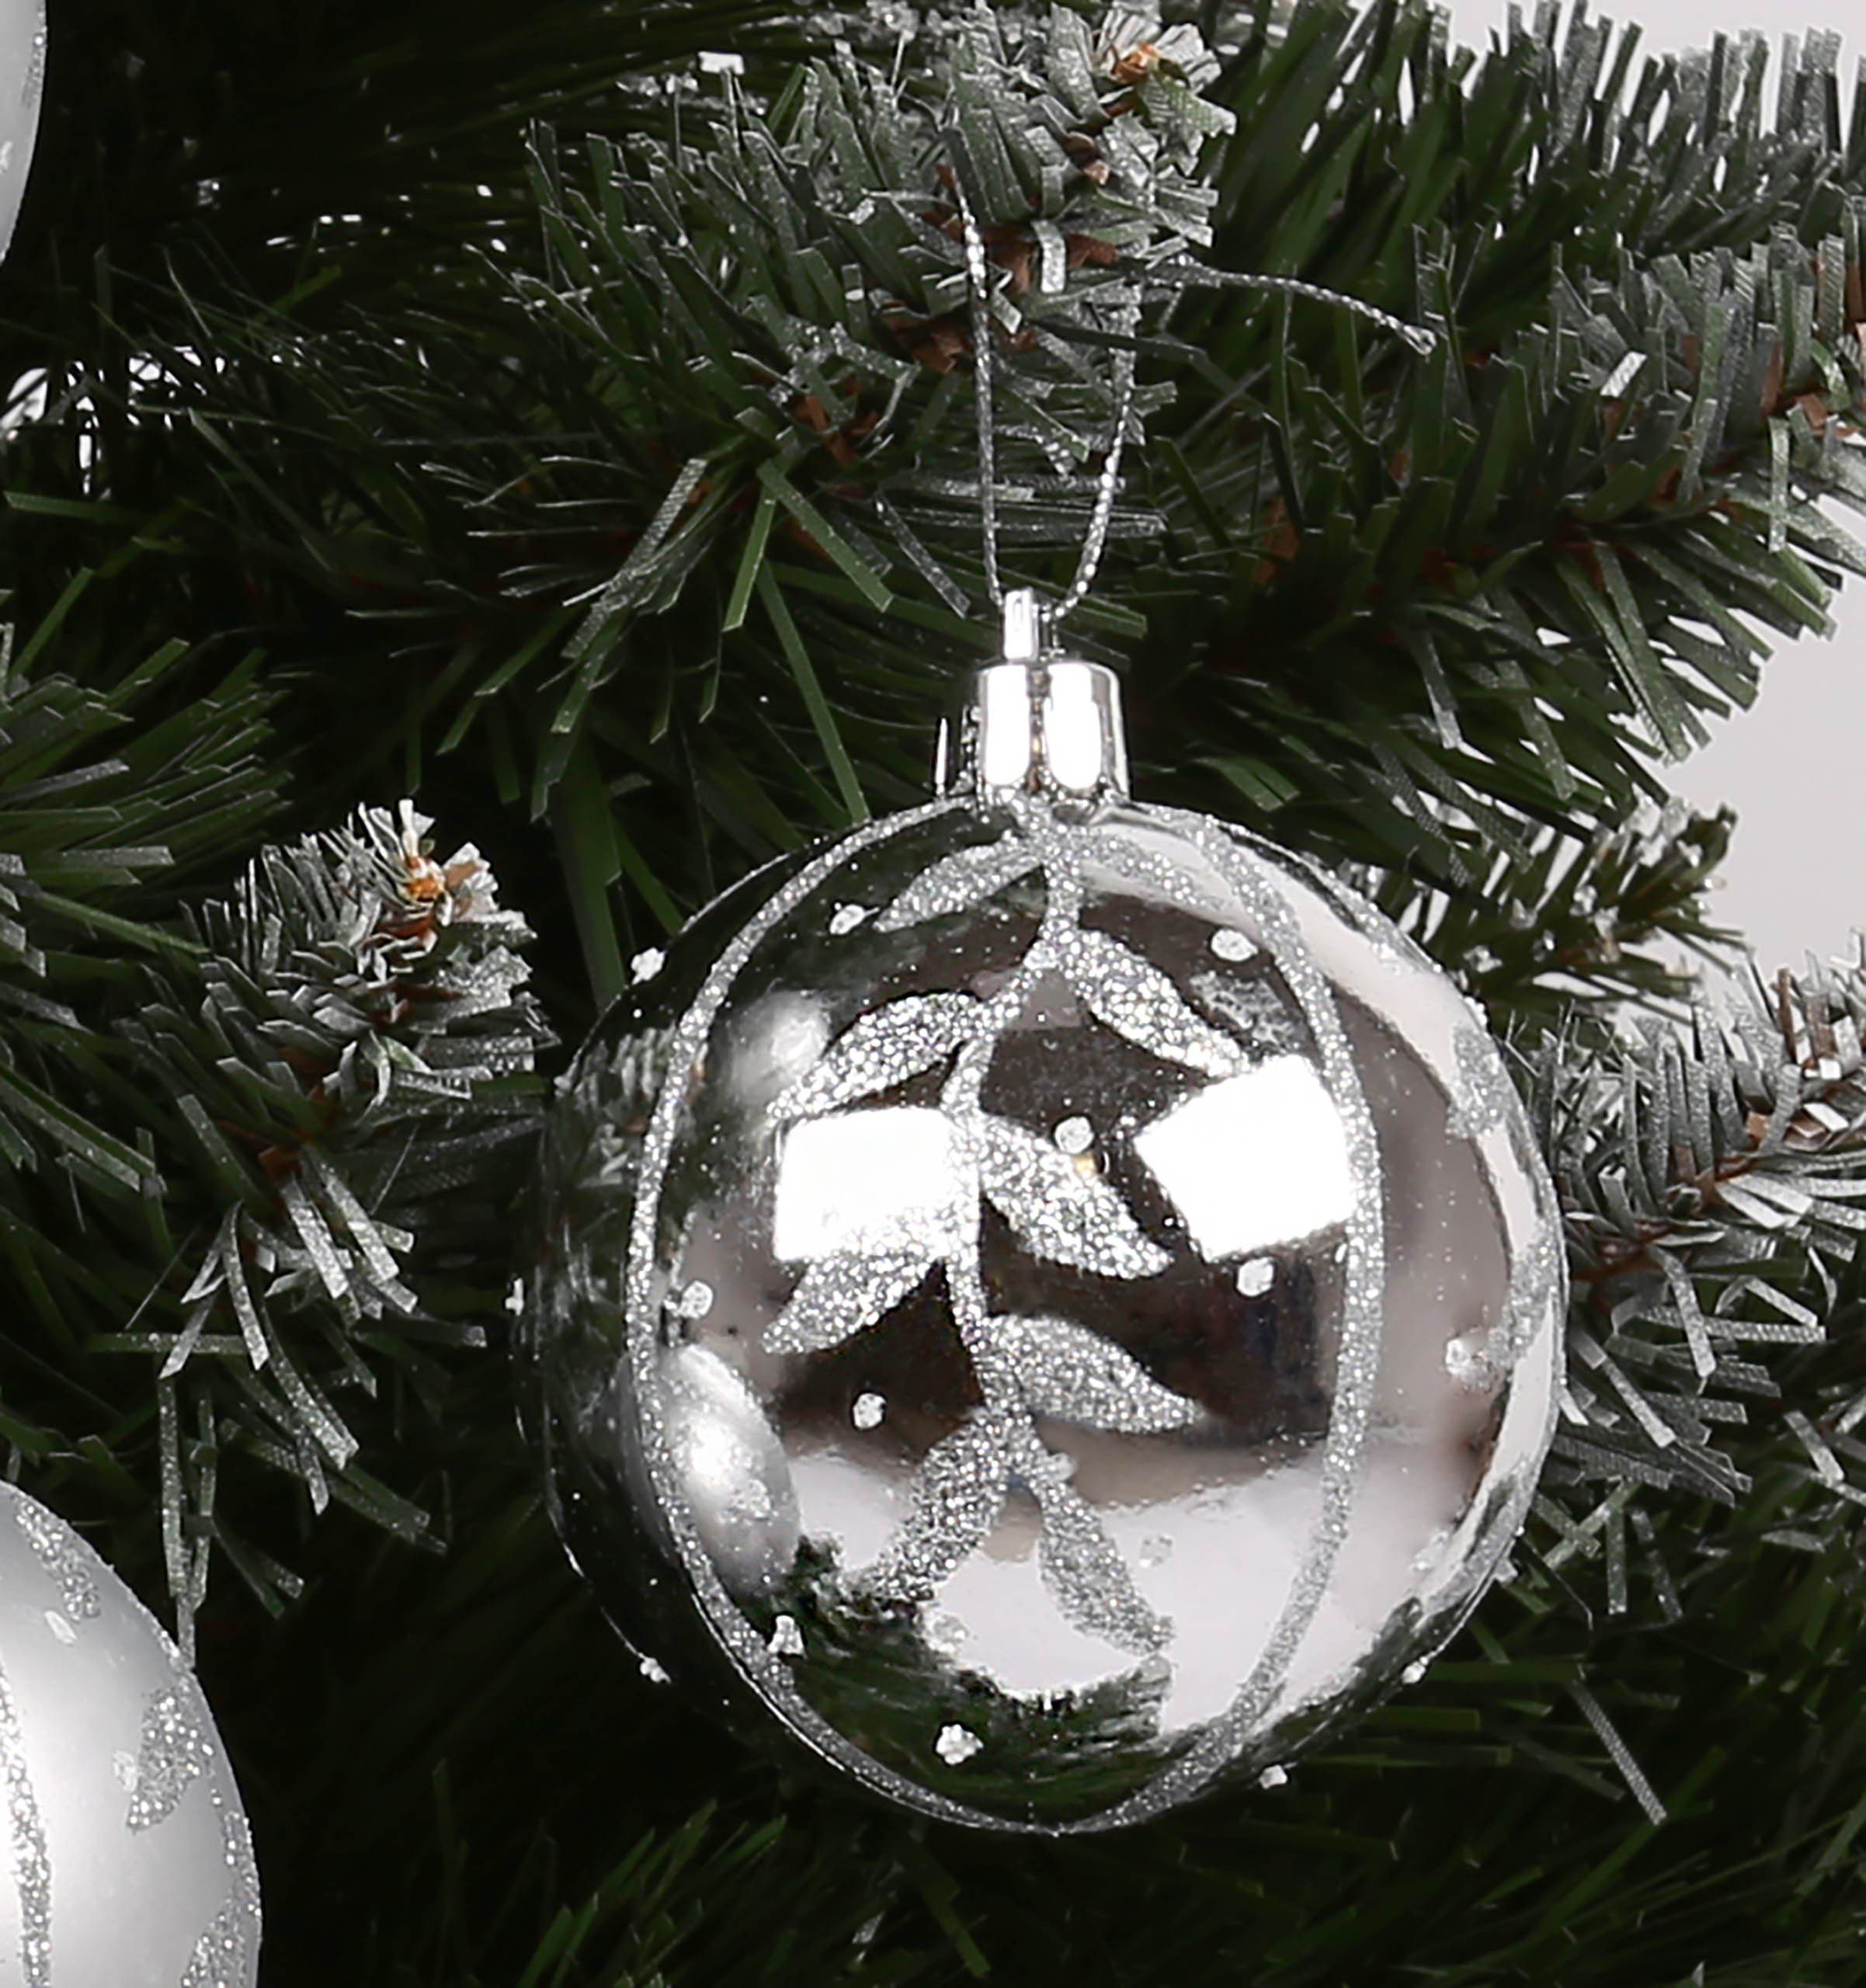 Silberne aus Sarcia.eu 7cm, 1Pack Kunststoff 6Stück kugeln Glitzter mit Weihnachtsbaumkugel